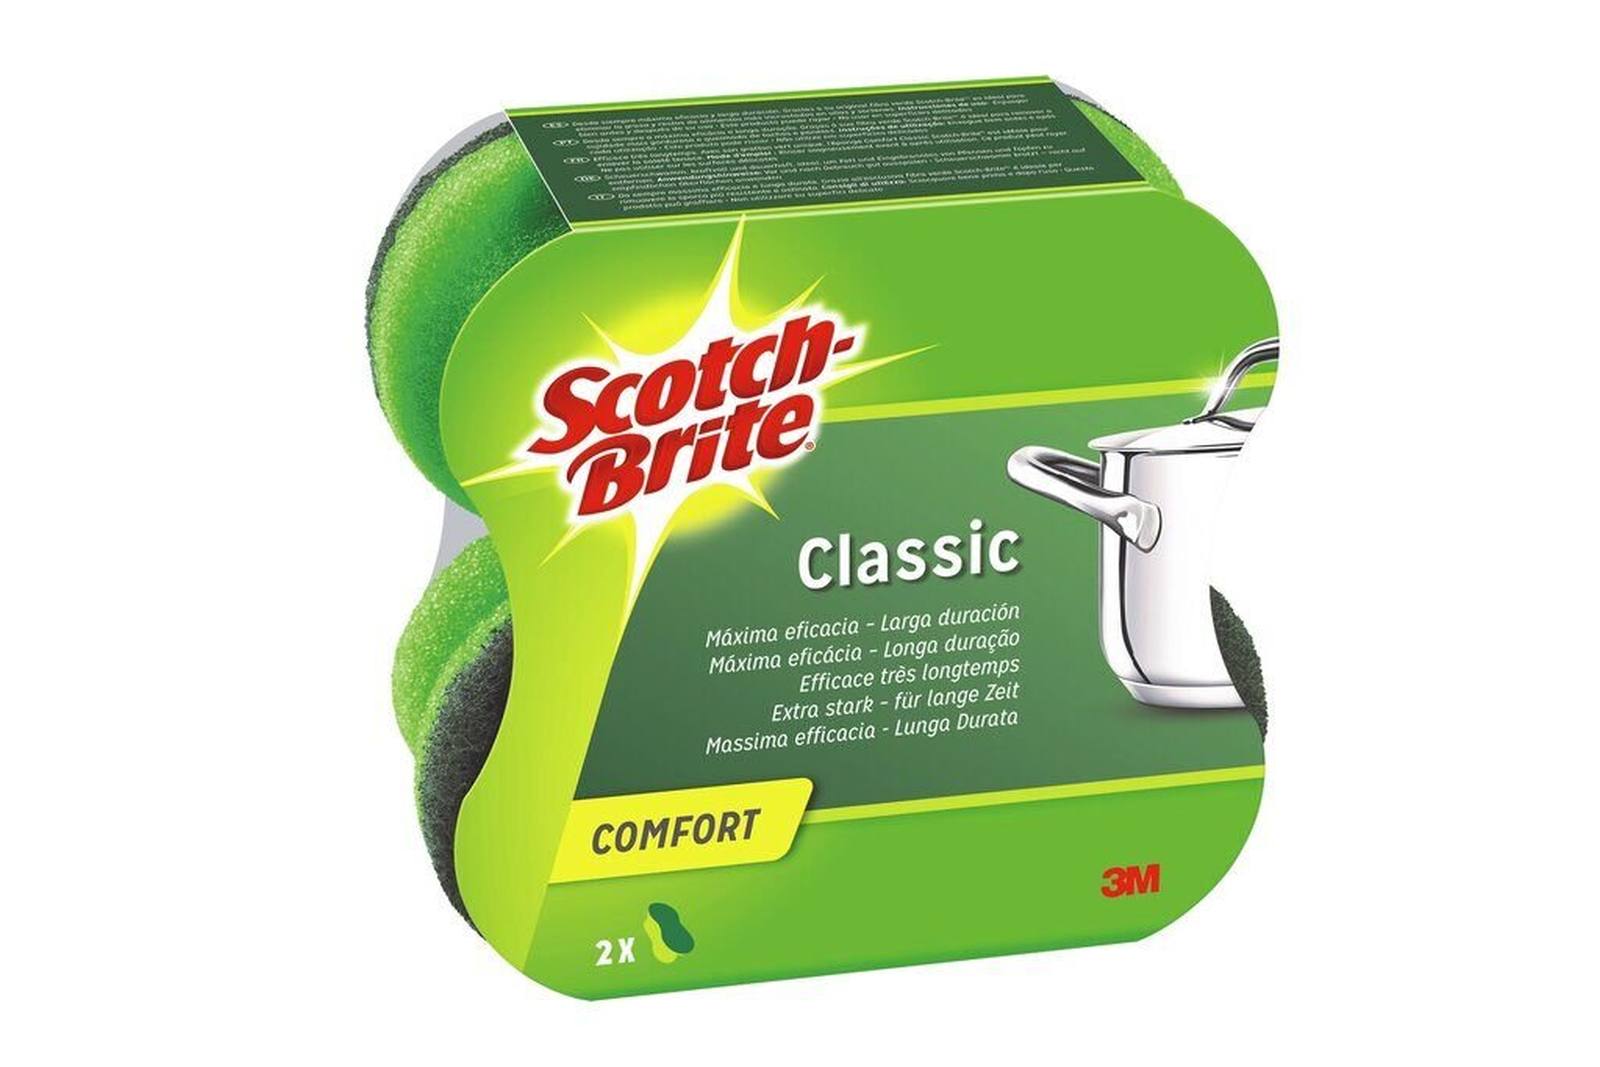 3M Scotch-Brite Classic spugna di pulizia comfort extra forte CLCNS2, verde-verde, 2 pezzi